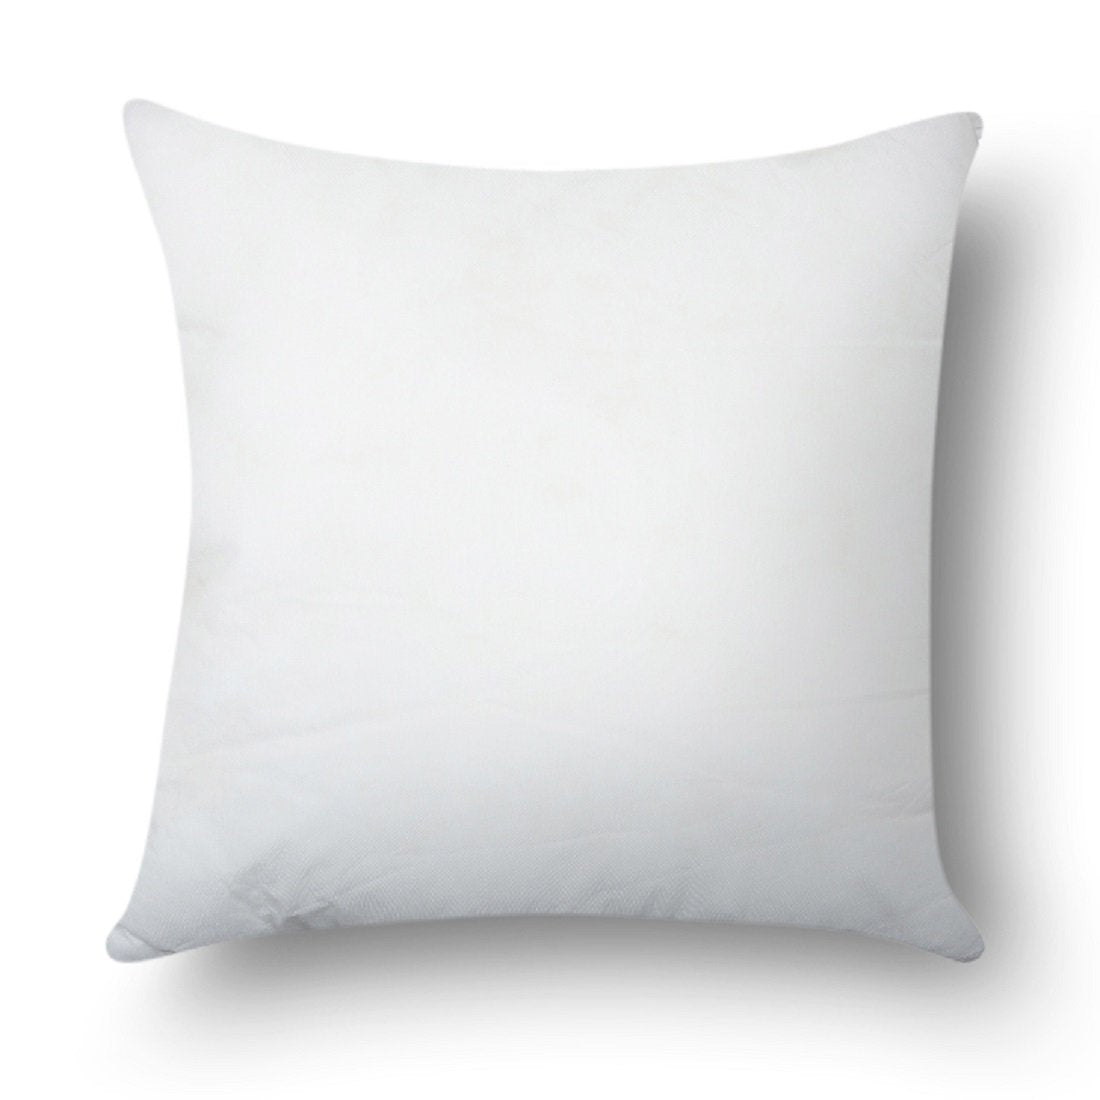 Pillow Insert_ 20x20 inch